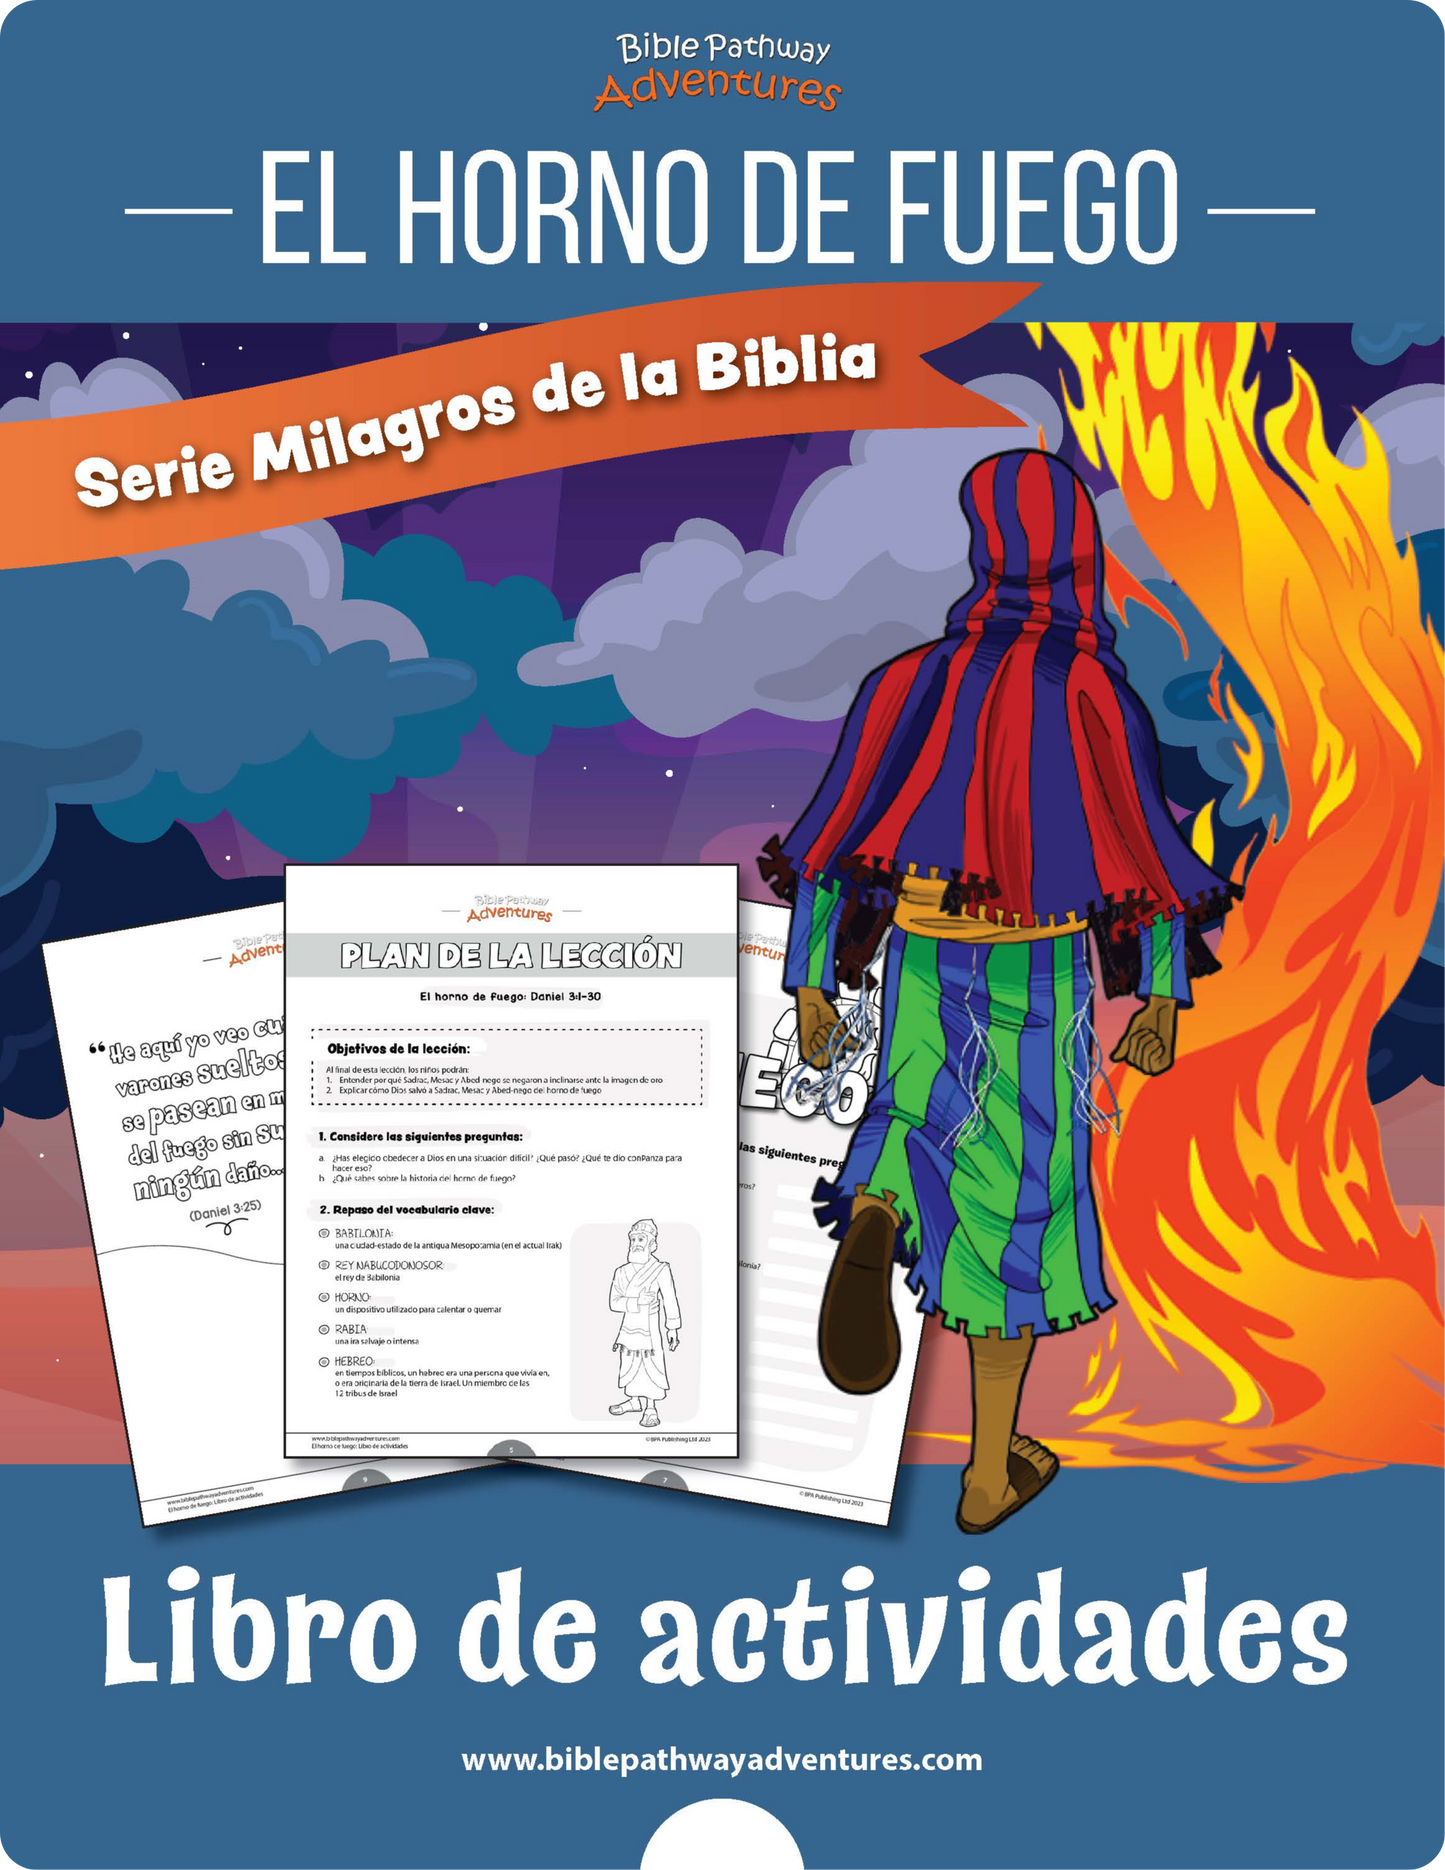 El horno de fuego: Libro de actividades (PDF)